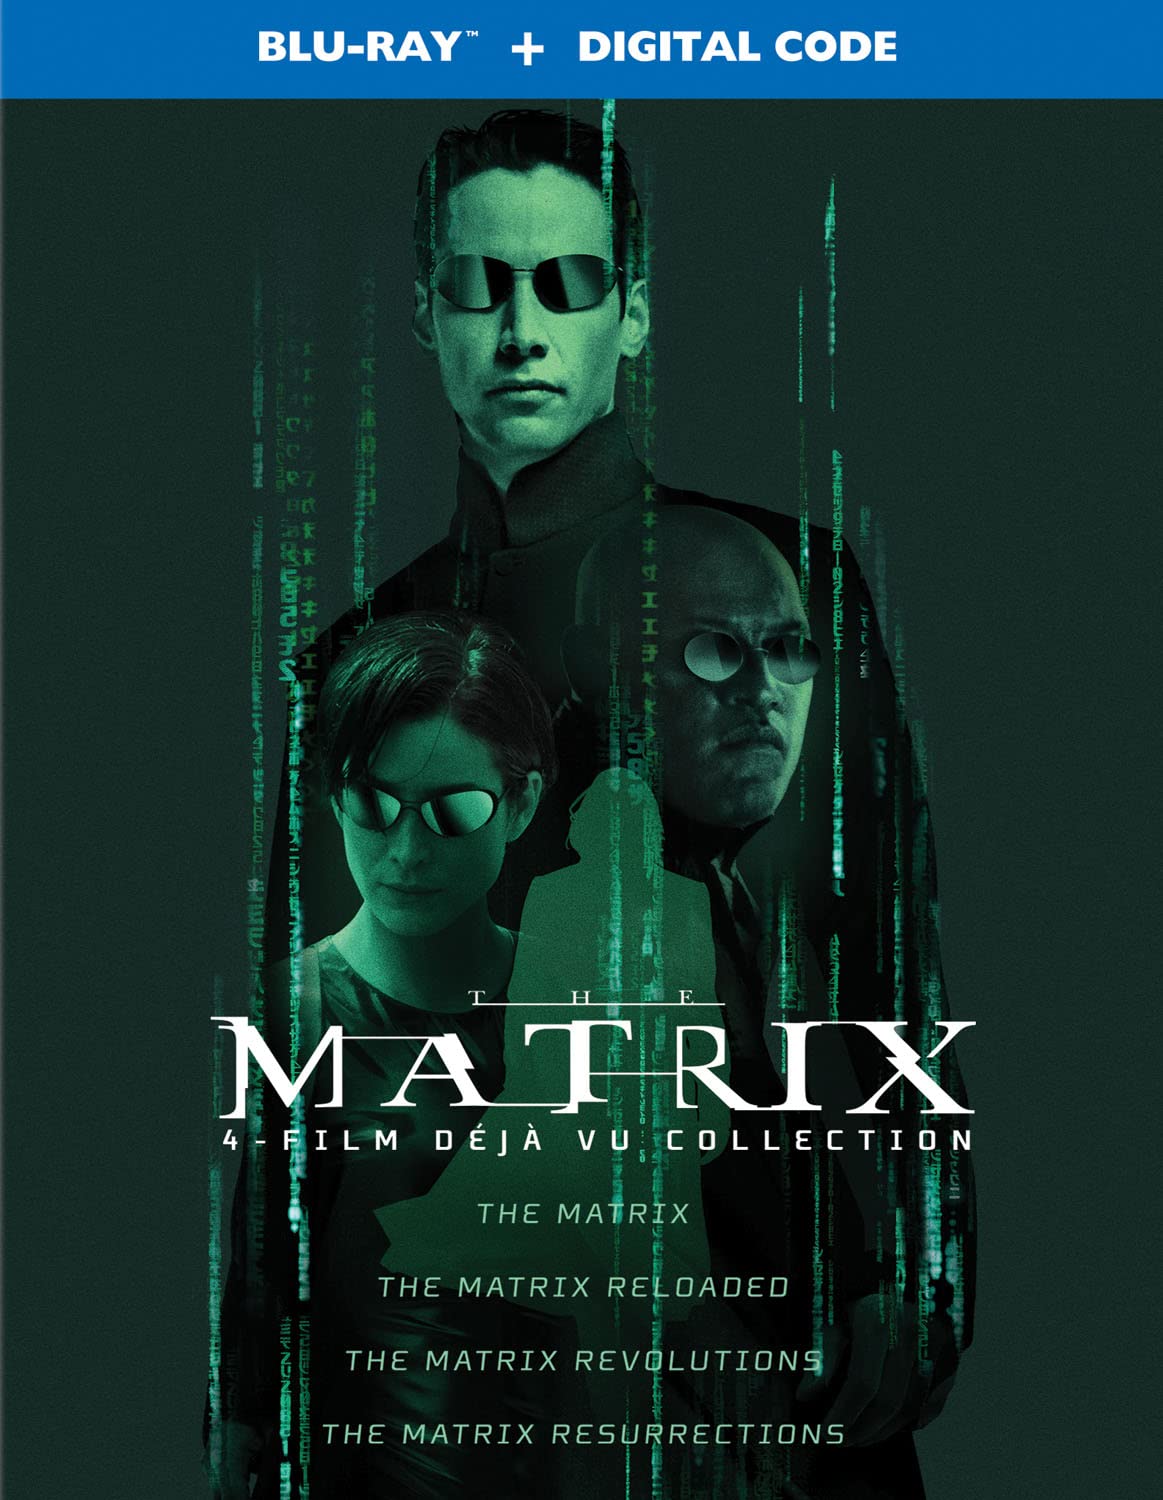 The Matrix 4-Film Déjà Vu Collection Blu-ray